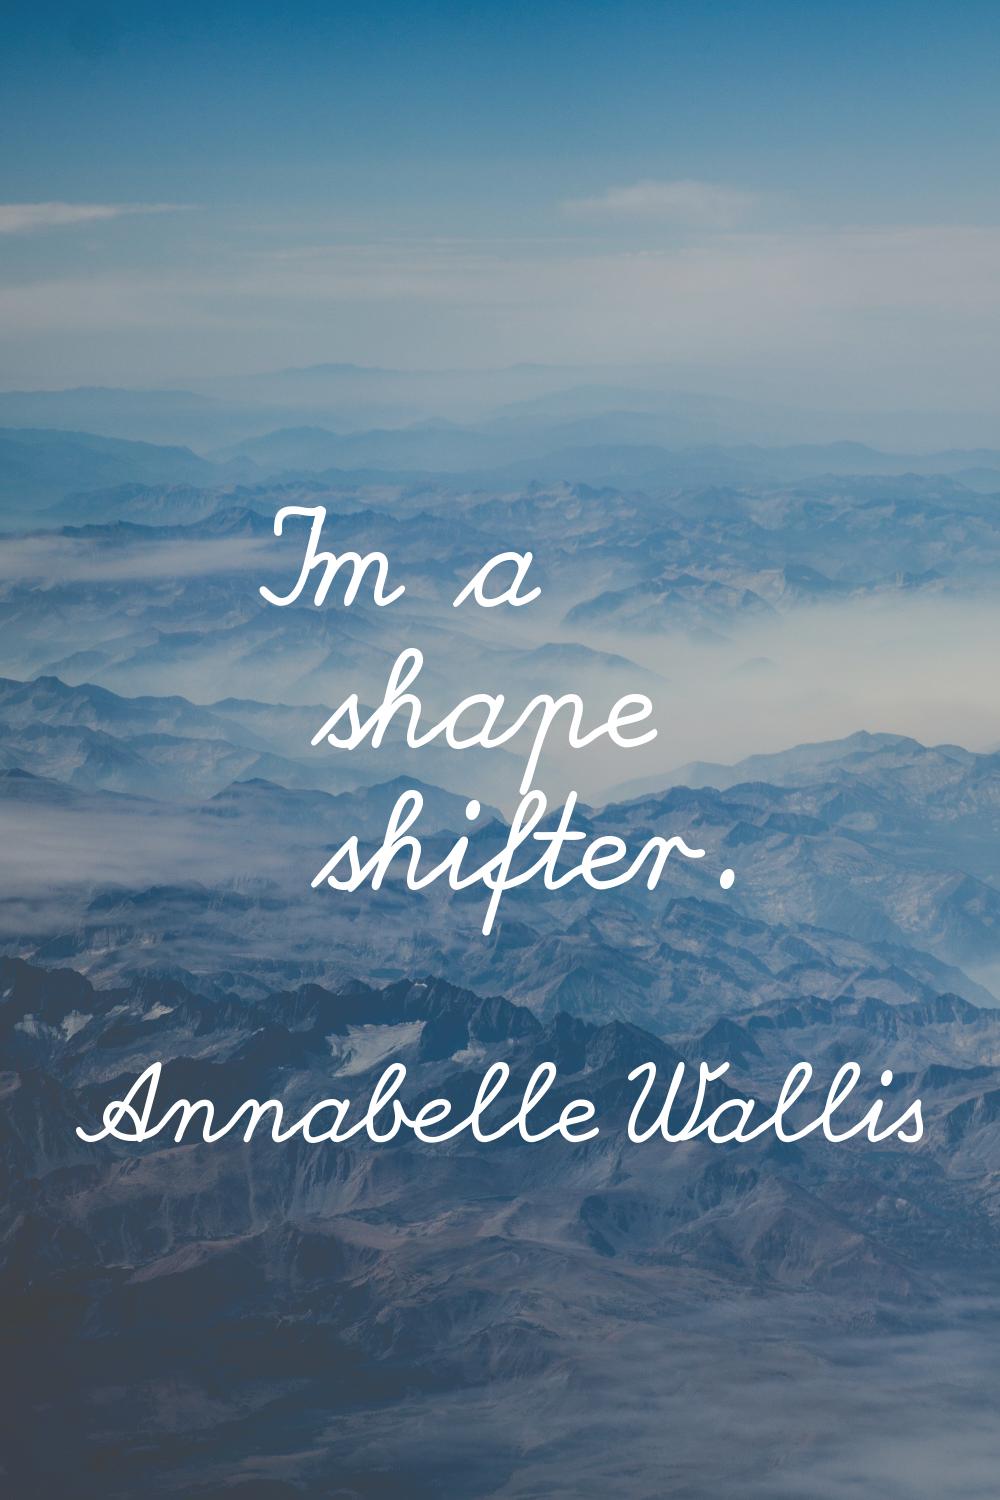 I'm a shape shifter.